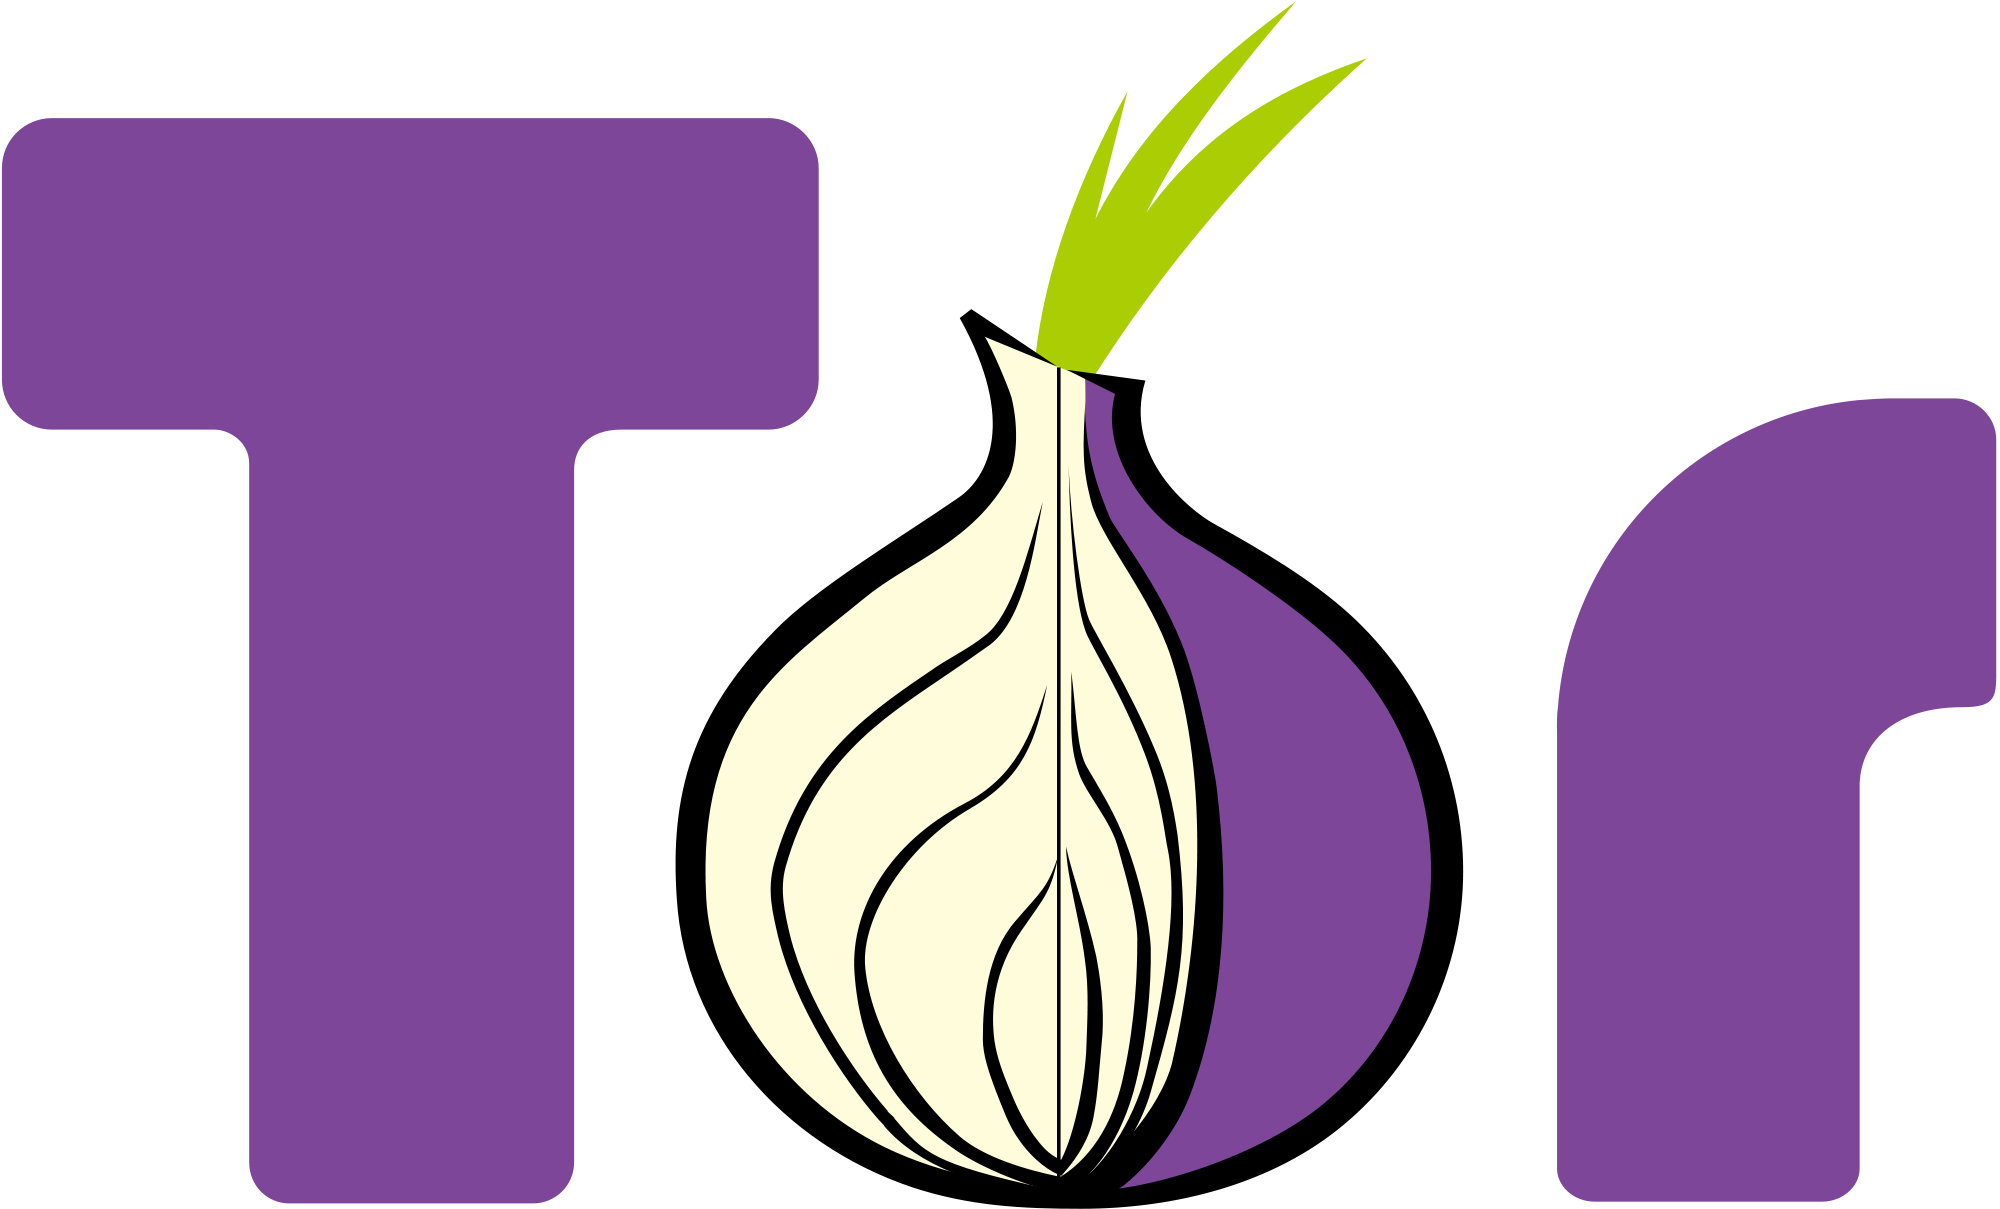 O smartphone irá utilizar o The Onion Router, ou Tor, como também é conhecido, que usa camadas de criptografia para ajudar a defender contra análise de tráfego. Foto: Divulgação